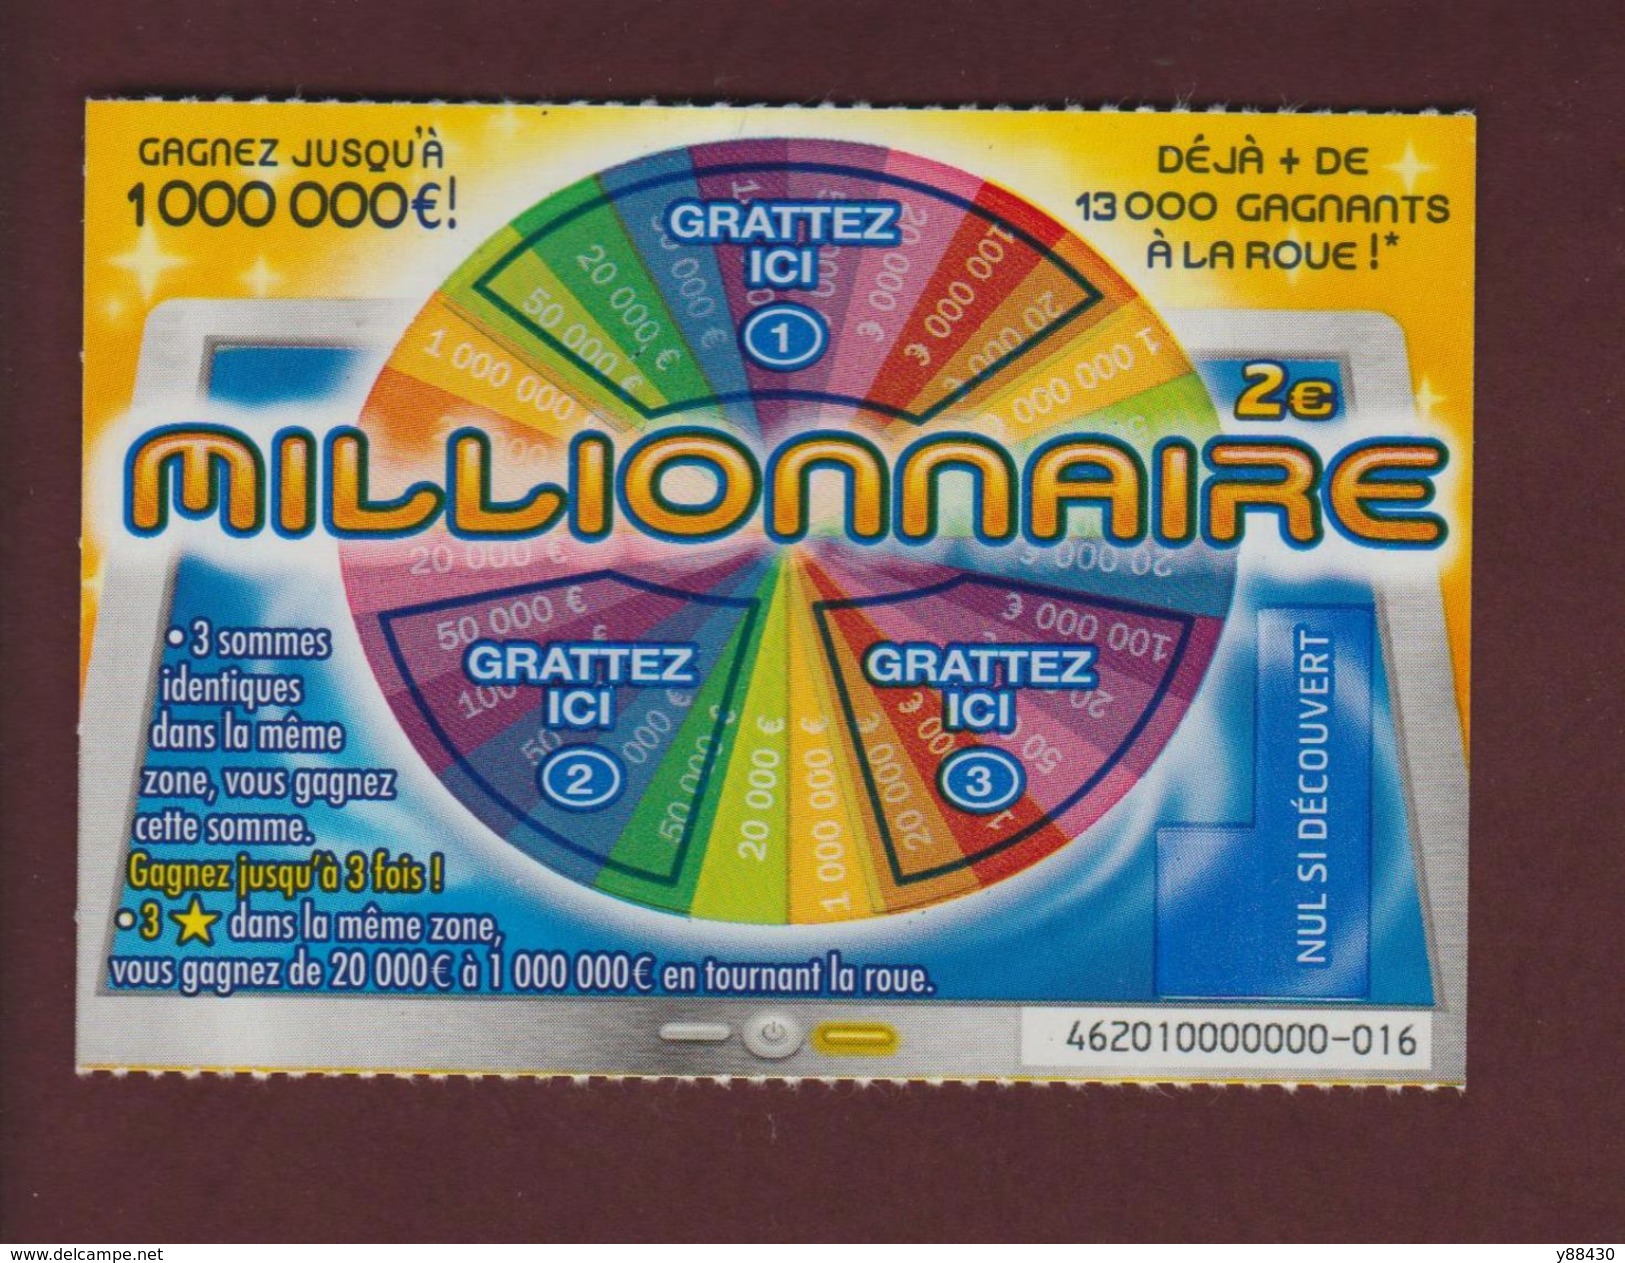 Billets de Loterie - grattage FDJ - MILLIONNAIRE 36106 trait bleu - ticket  gagnant (non encaissable) - FRANCAISE DES JEUX